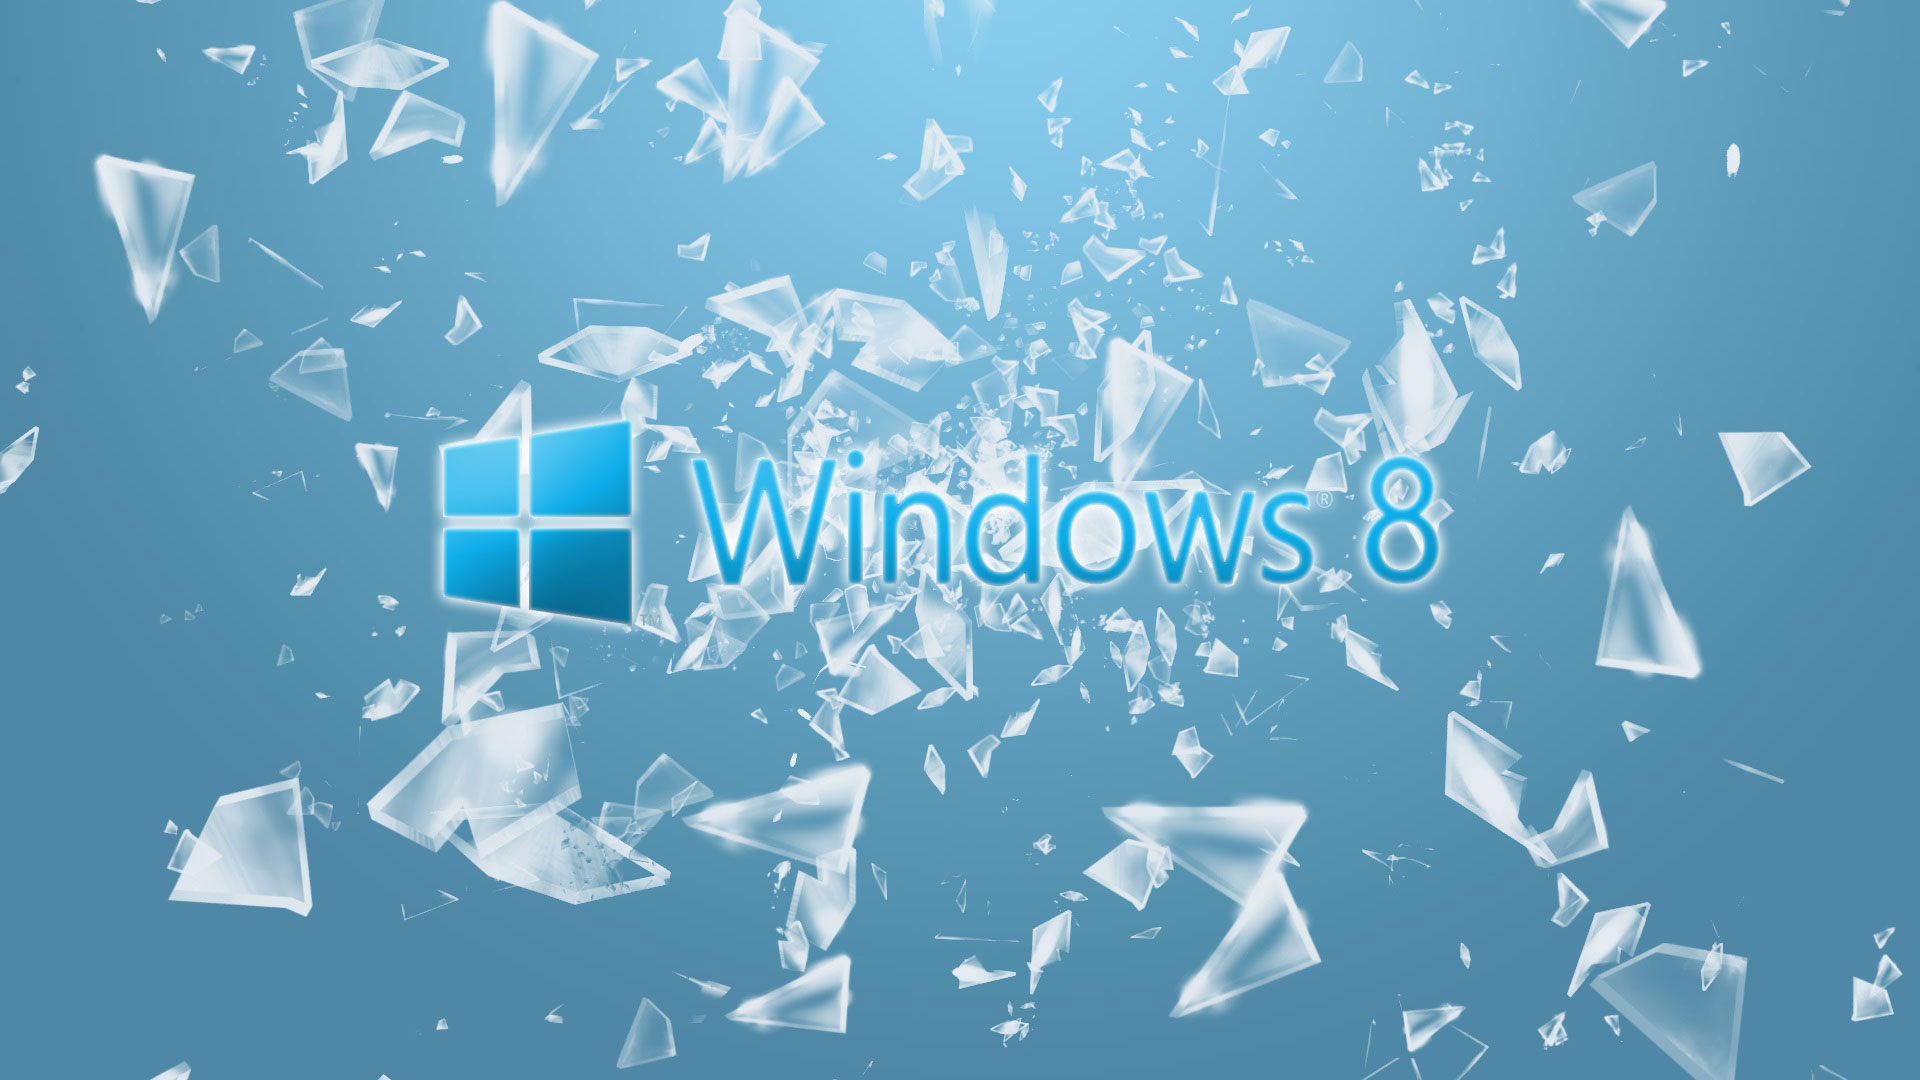 Hình nền Windows 8: Cập nhật ngay hình nền mới nhất của Windows 8, giúp bạn tạo cho mình một môi trường làm việc sạch sẽ, hiện đại và tối giản. Chắc chắn, bạn sẽ ghi điểm và nổi bật hơn khi ngồi trước màn hình chiếc laptop/notebook của mình.